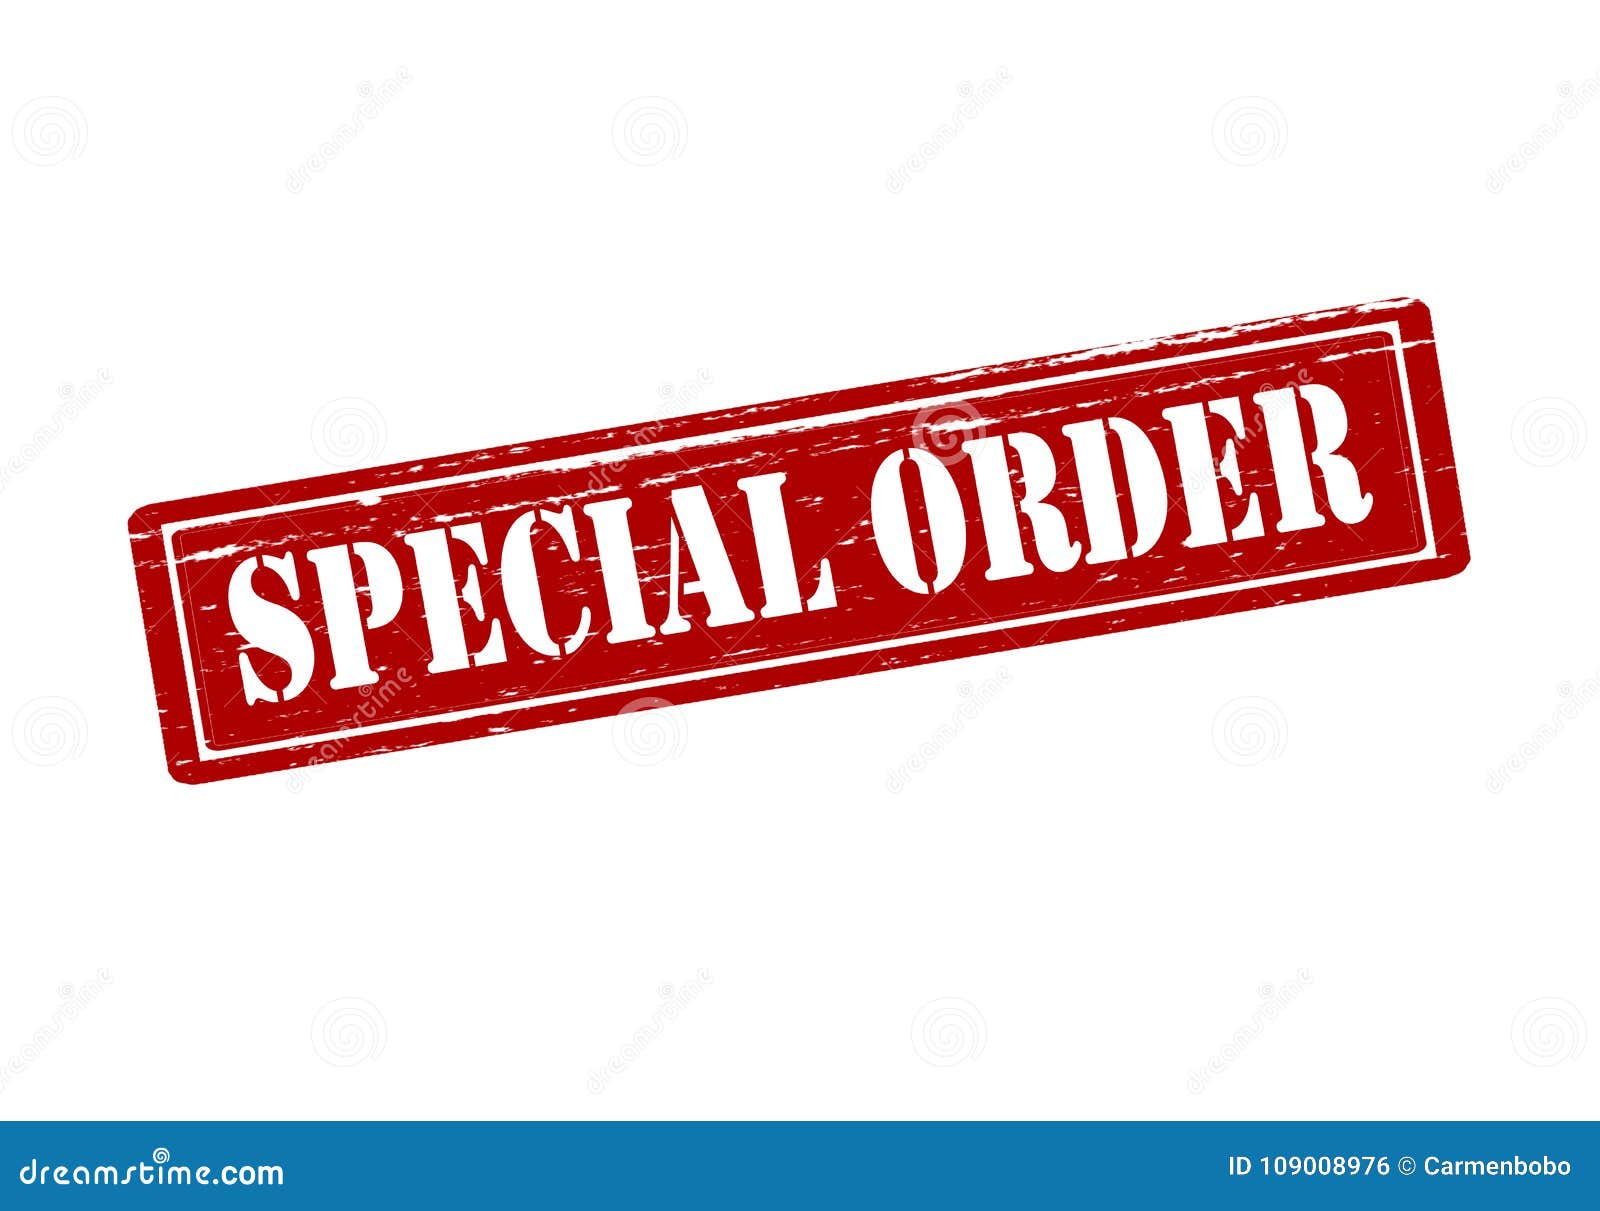 Special order designs 